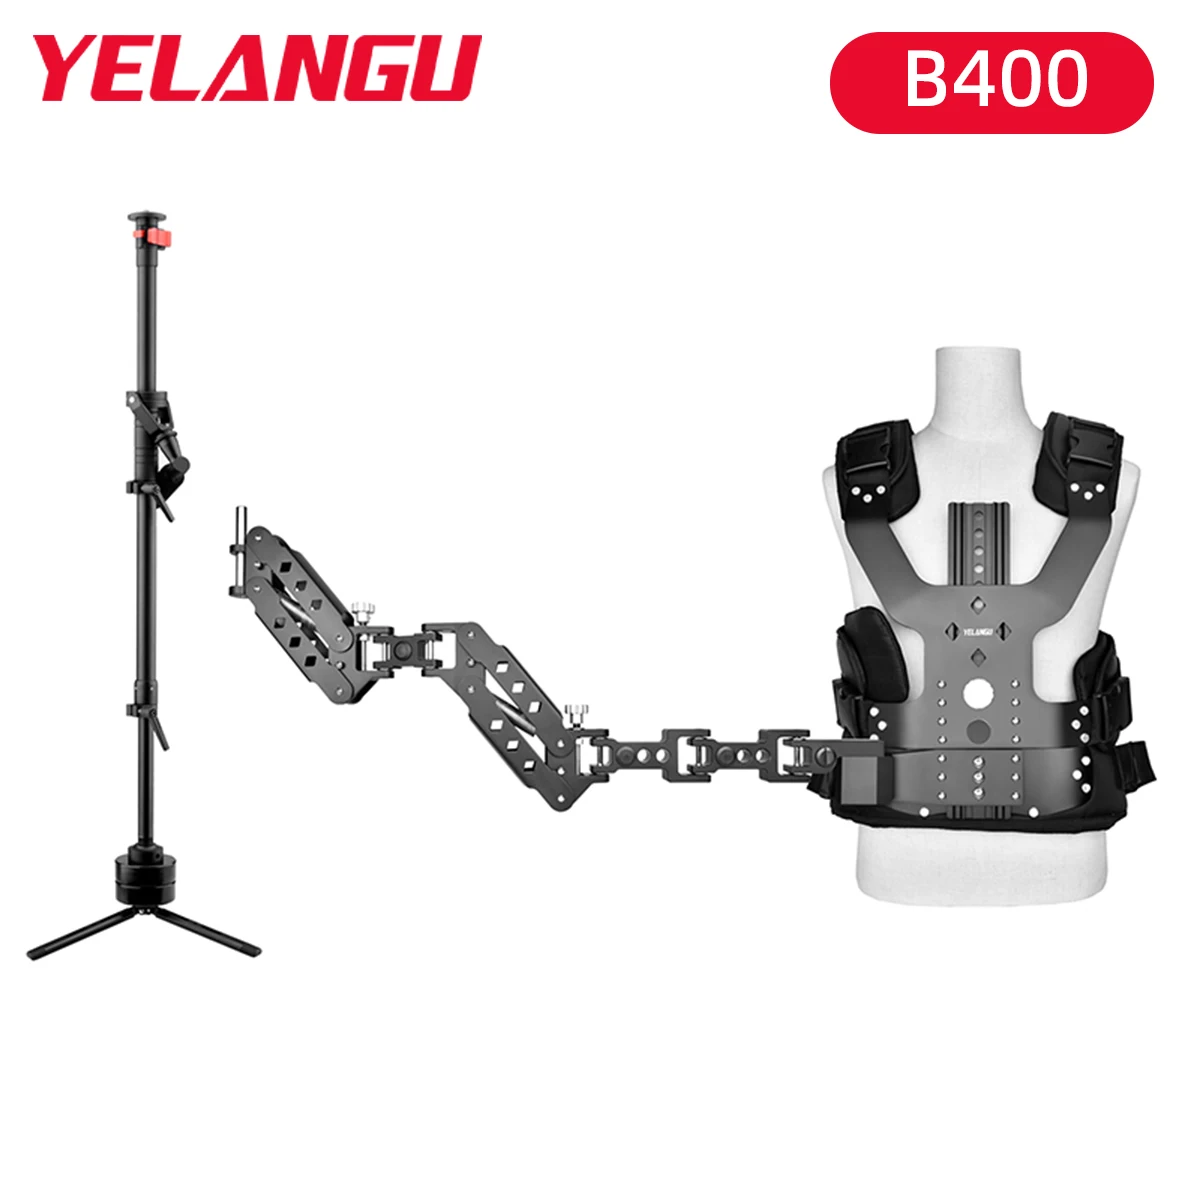 YELANGU B400 Confort Stabilizarea Arm & Vest pentru DSLR camere Video Portabile Camera Video Corp-Montare sistem steadycam Stabilizator de până la 10kg . ' - ' . 0